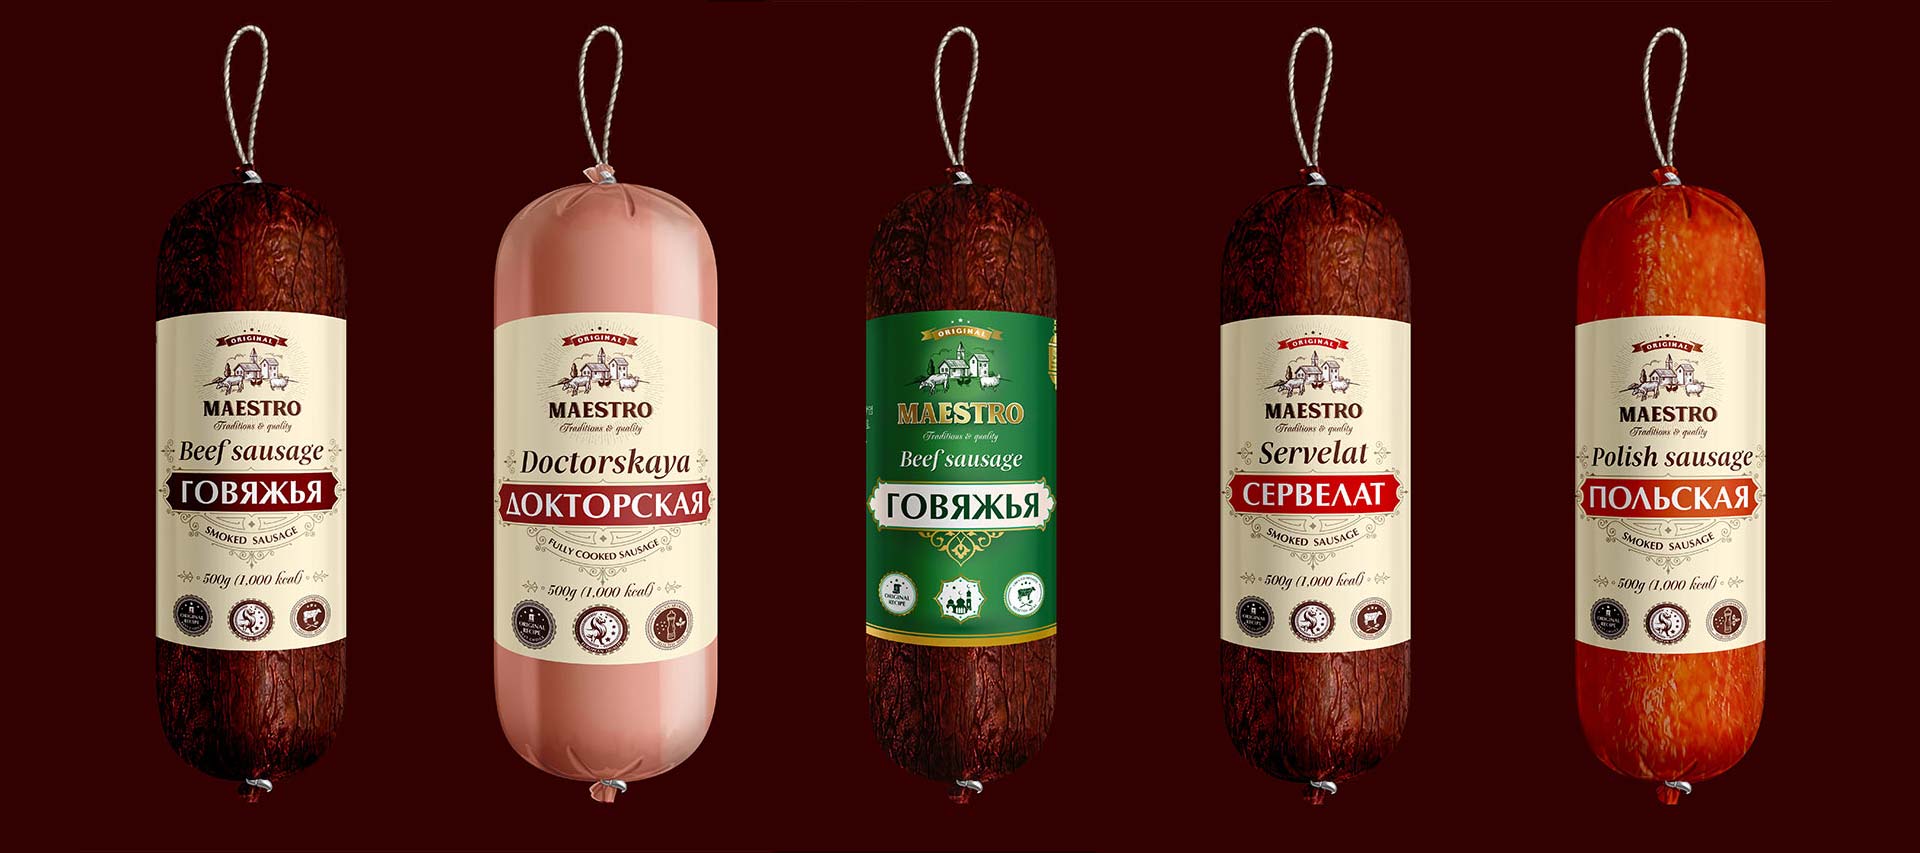 sausage packaging design